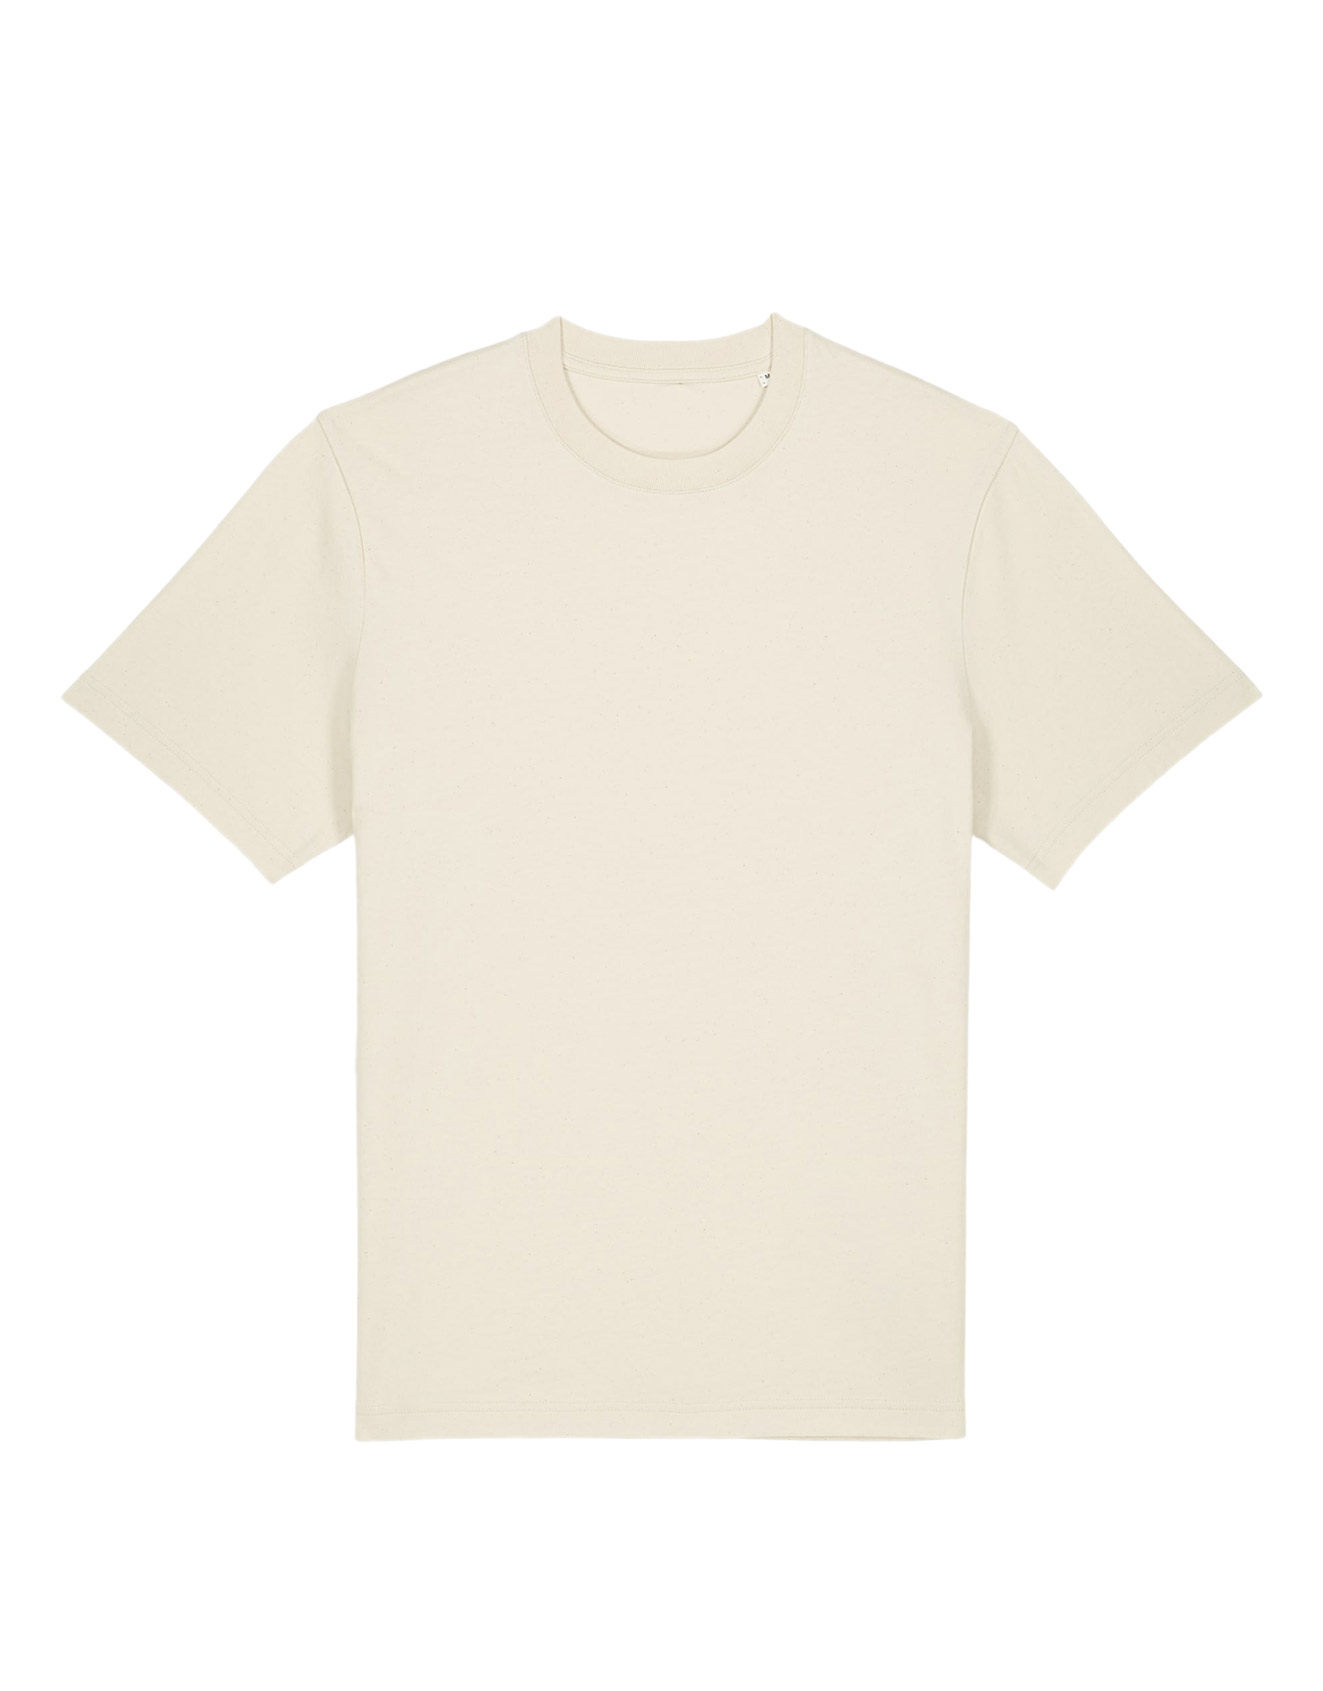 STANLEY/STELLA – Sparker 2.0 unisex t-shirt